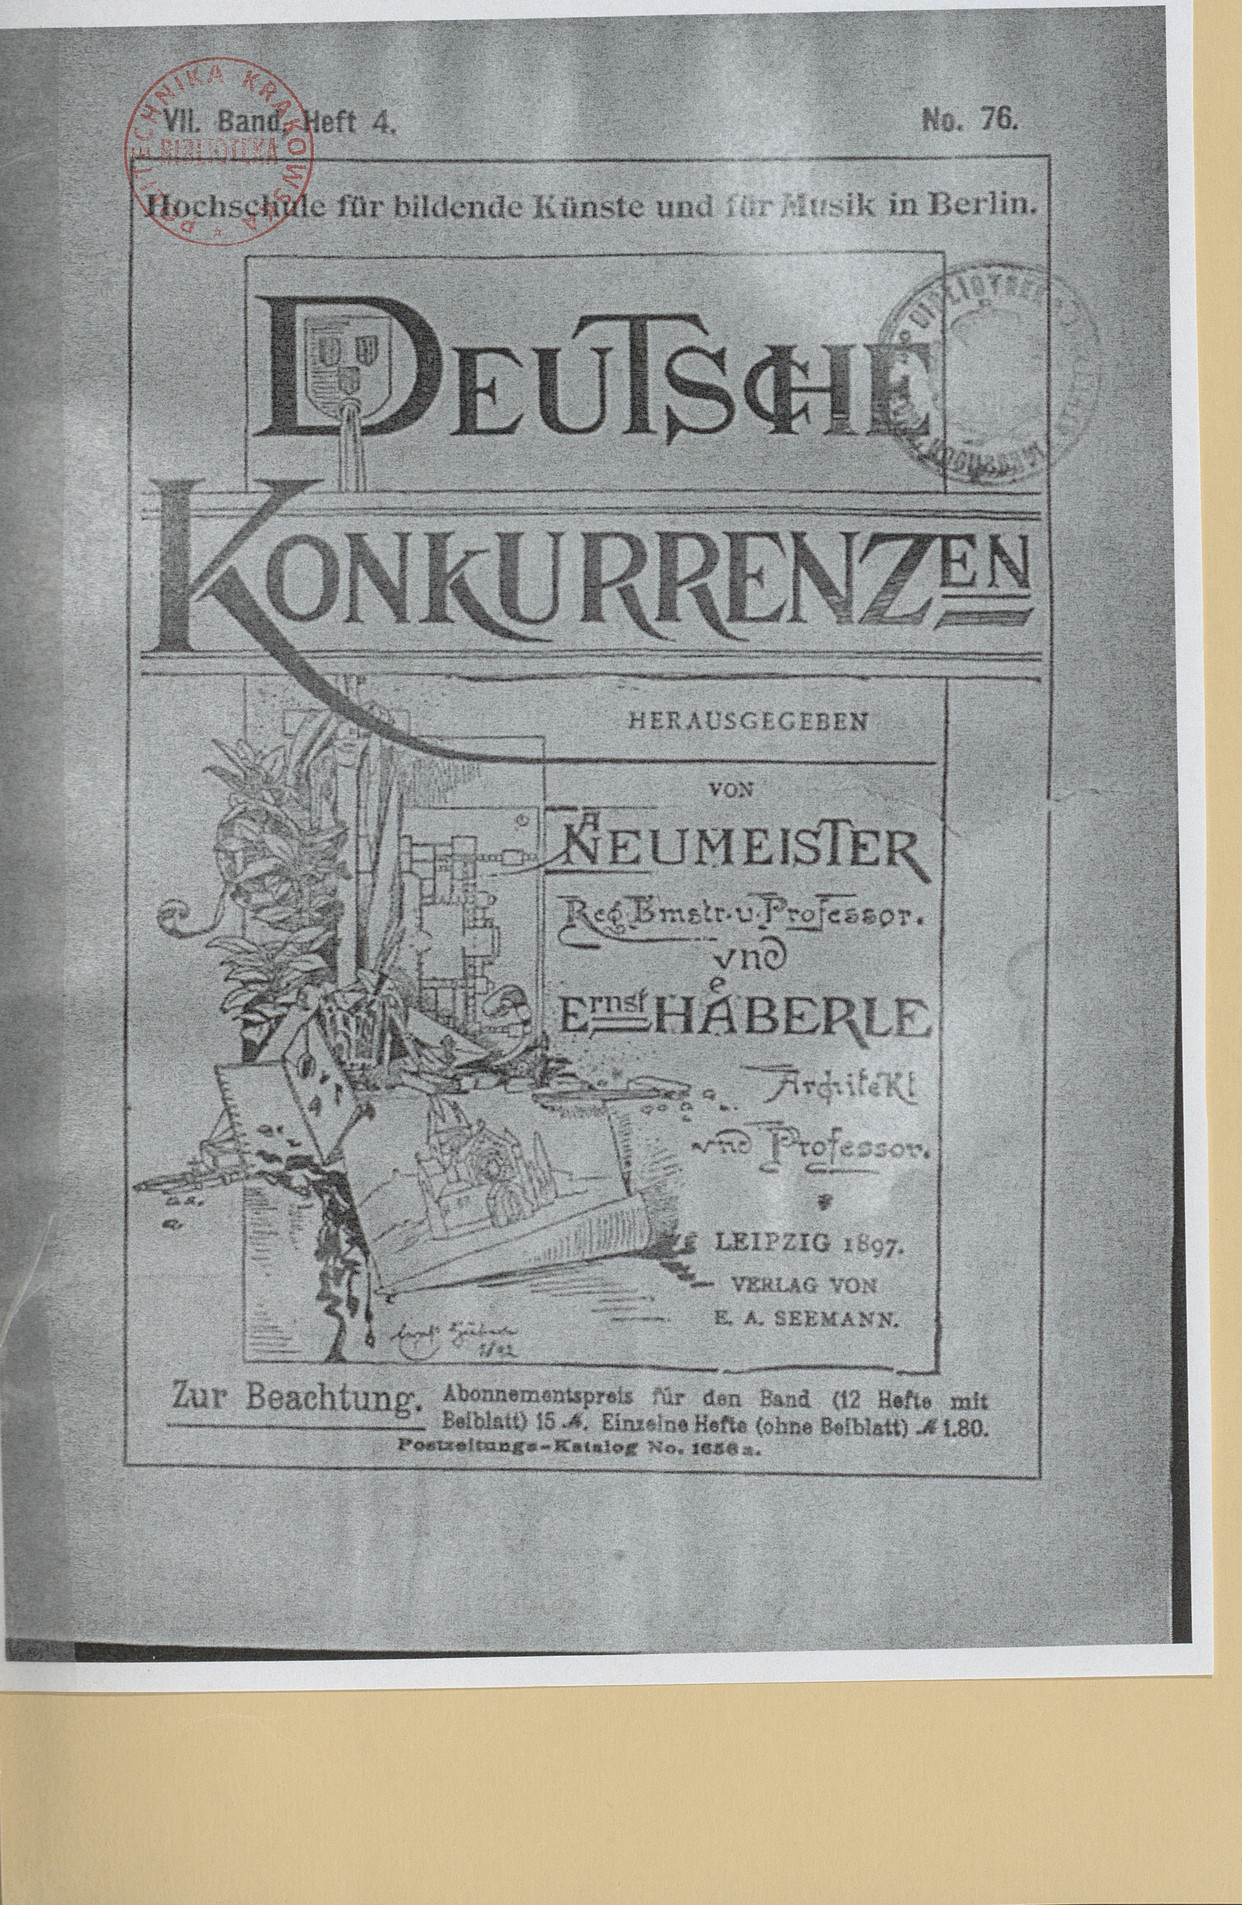 Deutsche Konkurrenzen, VII. Band, Heft. 4, No. 76